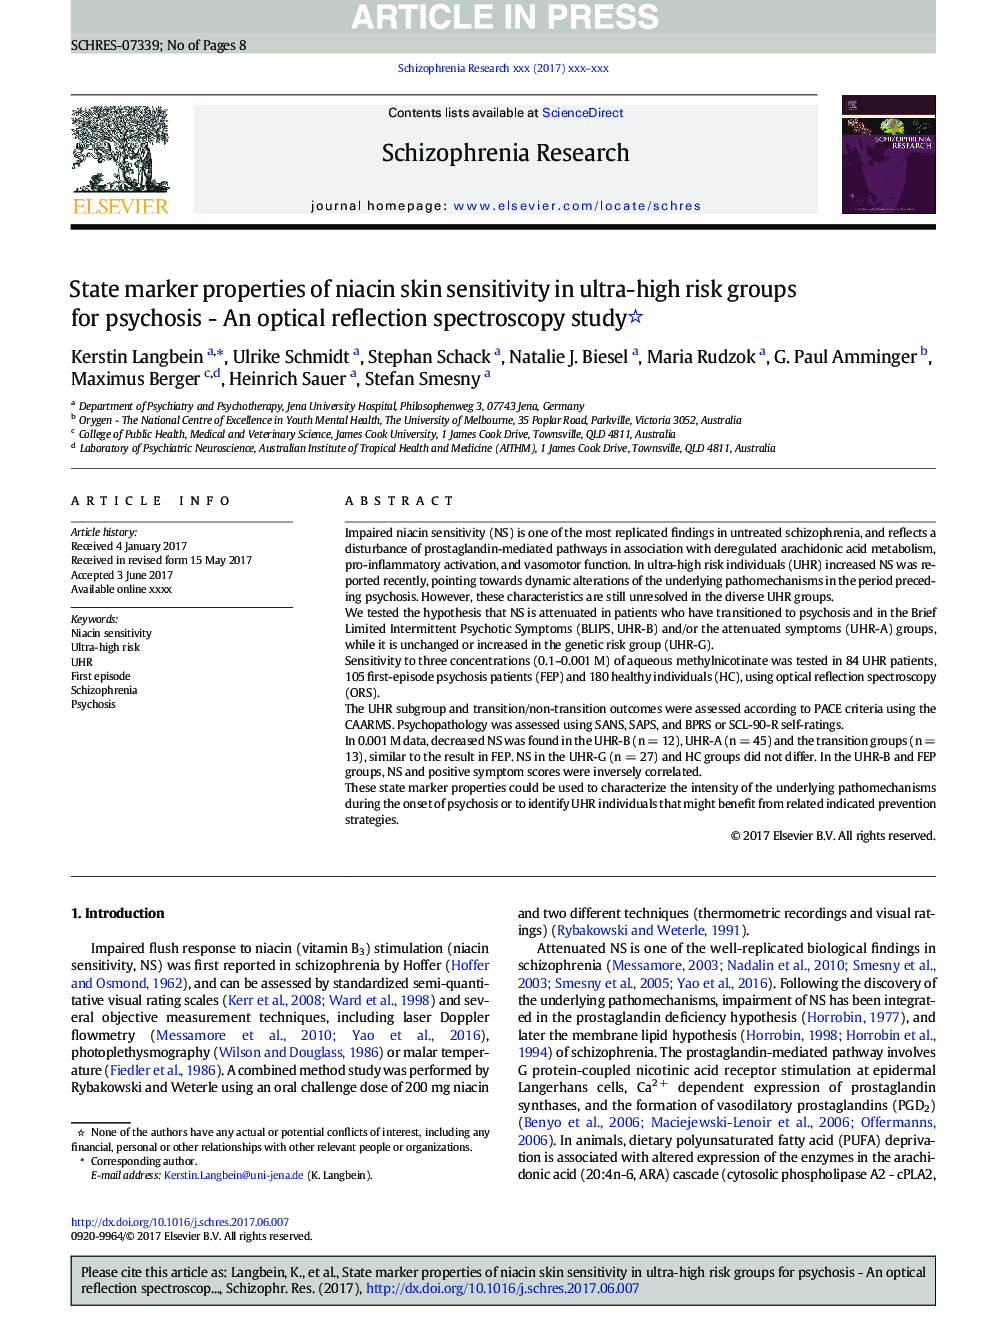 خصوصیات مارکر دولتی حساسیت پوست نیاسین در گروه های پر خطر با روانشناسی - مطالعه طیف سنجی بازتابی نوری 